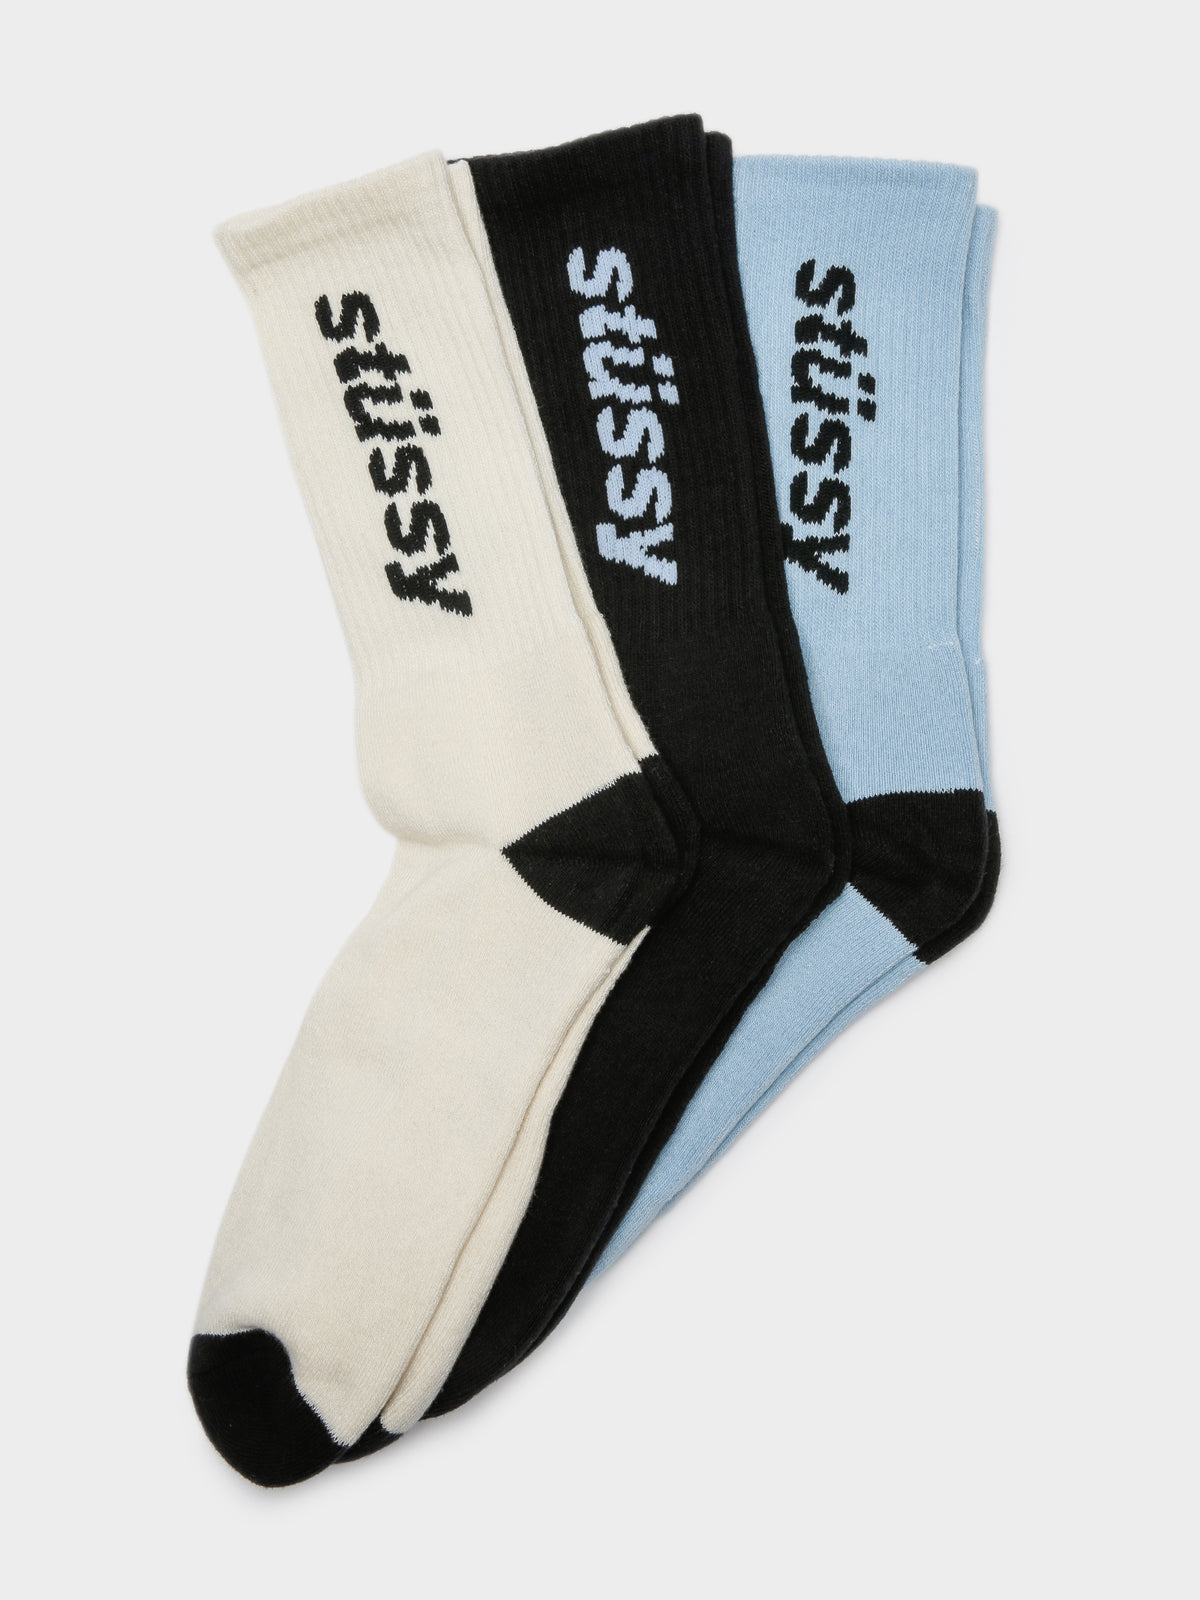 3 Pairs of Vertical Socks in White, Black &amp; Light Blue